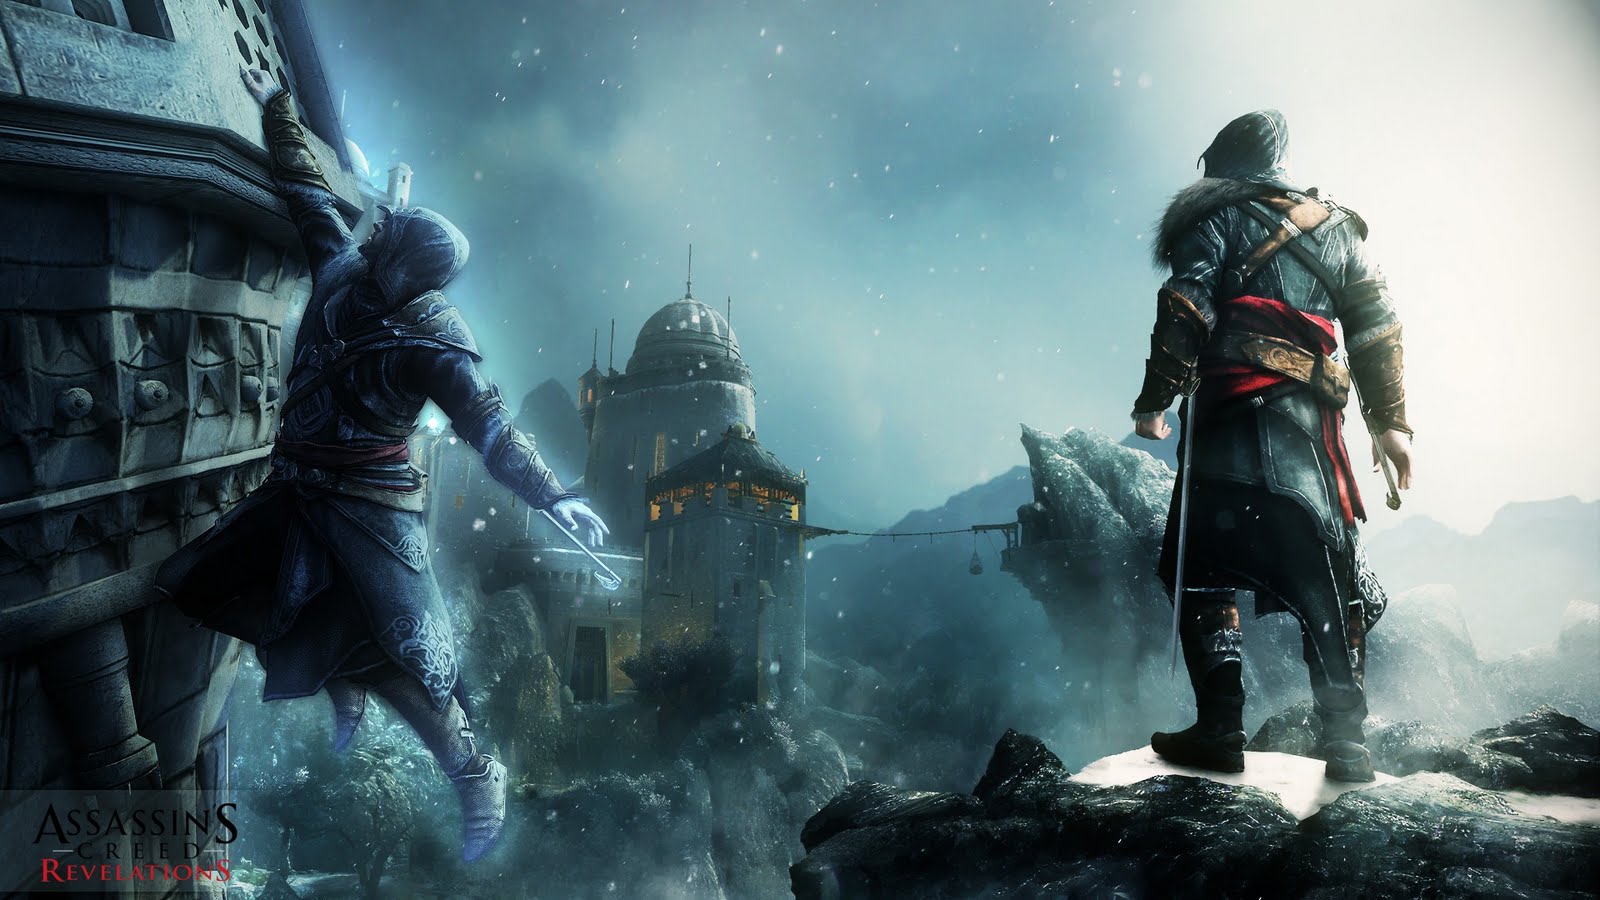 Wallpaper De Assassin S Creed Revelations HD Dragonxoft